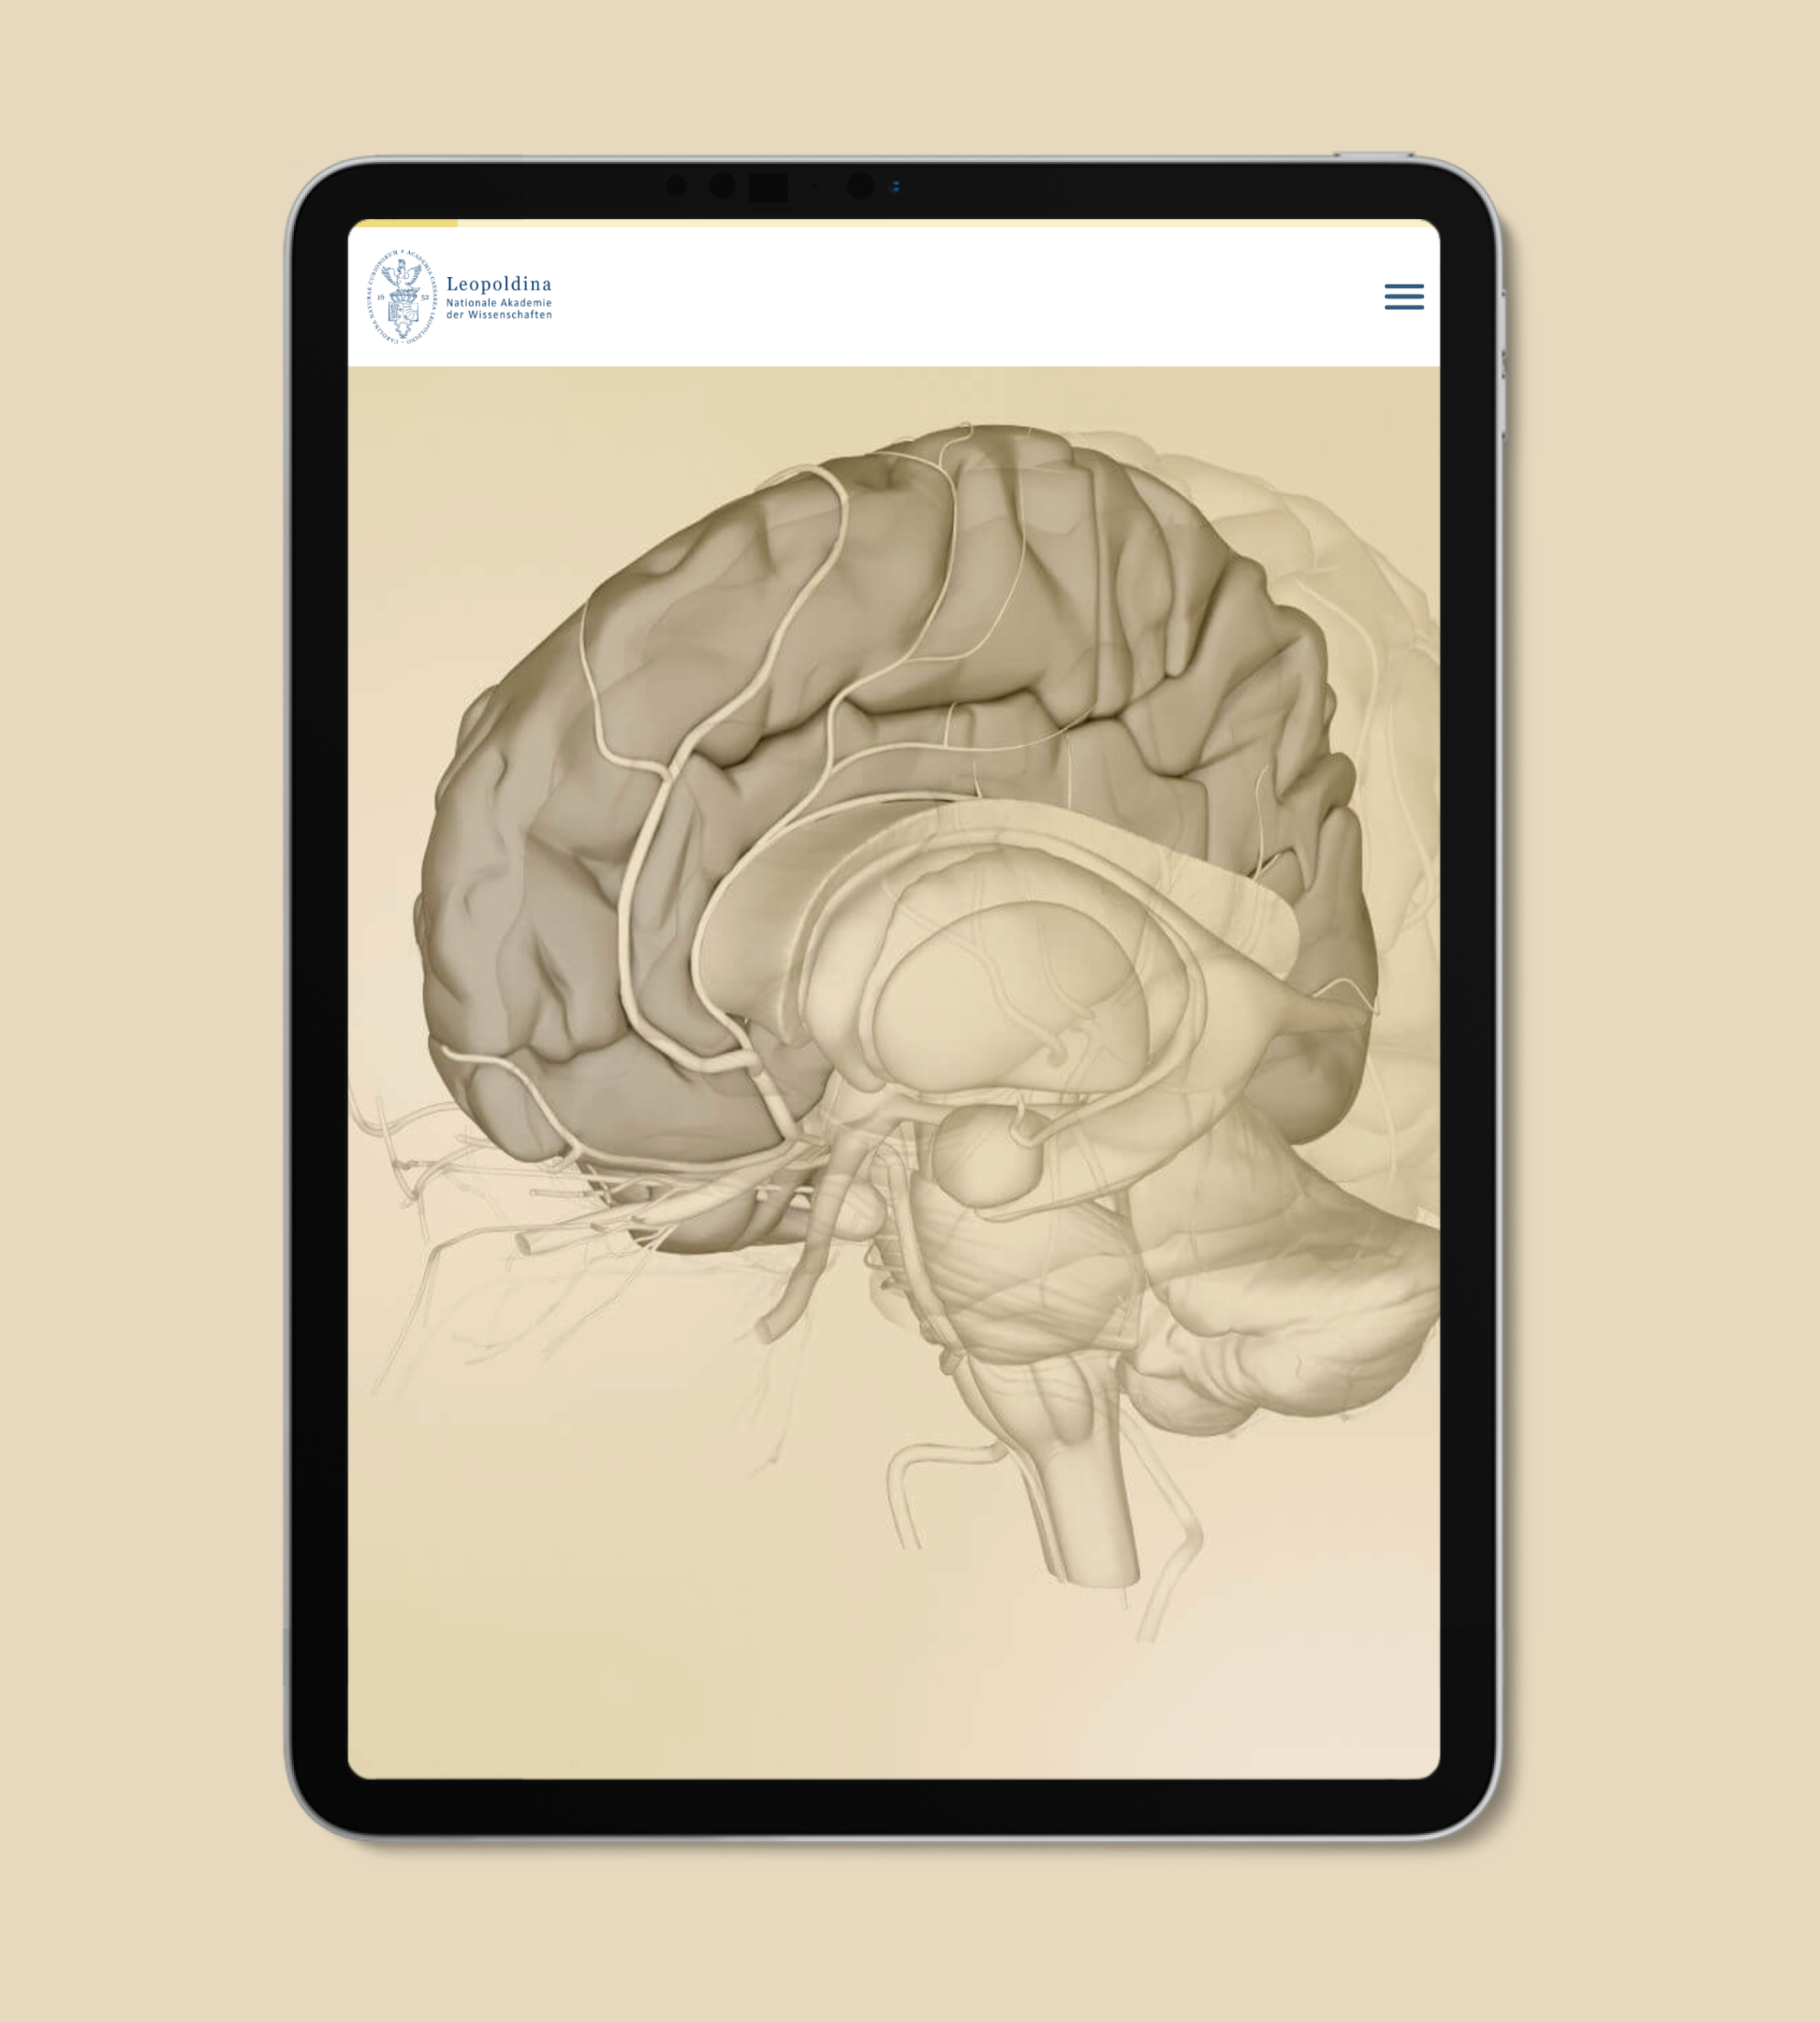 Der Startbildschirm des digitalen Dossiers zum Thema "Hirnorganoide". Im Hintergrund das Bild eines Gehirns.